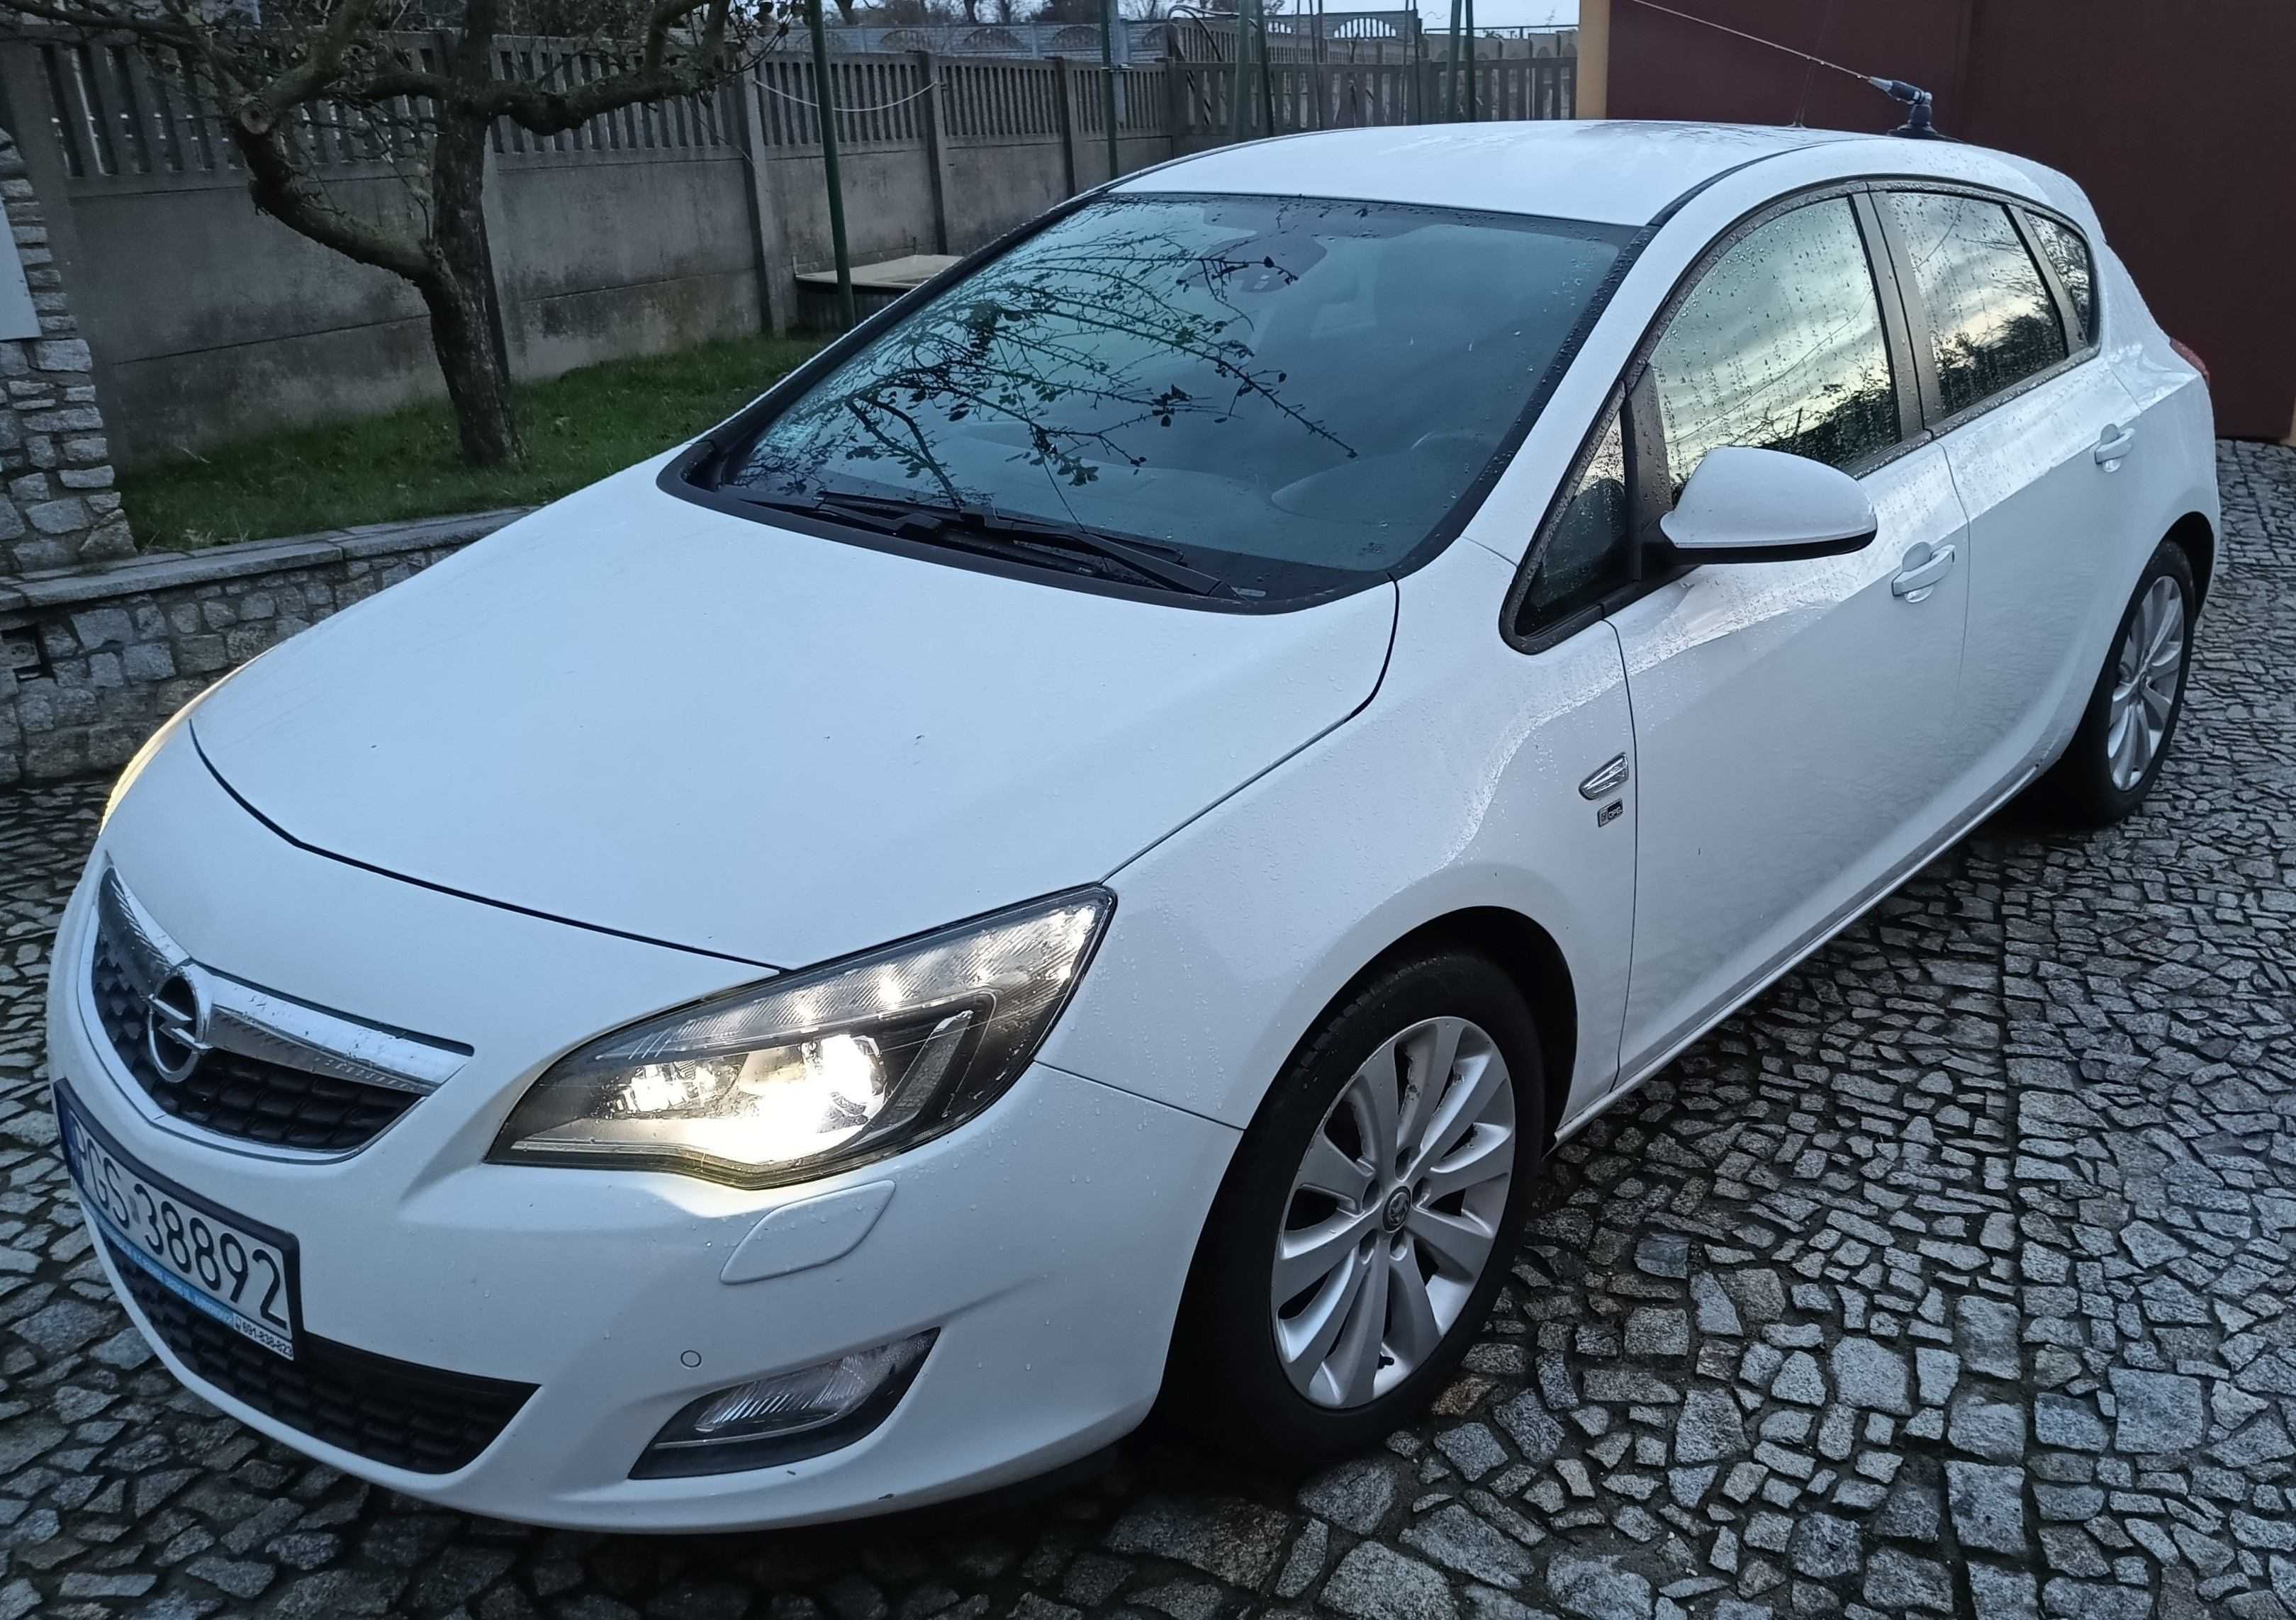 Opel Astra J 1.4T 140 KM 2012r. wersja jubileuszowa 150